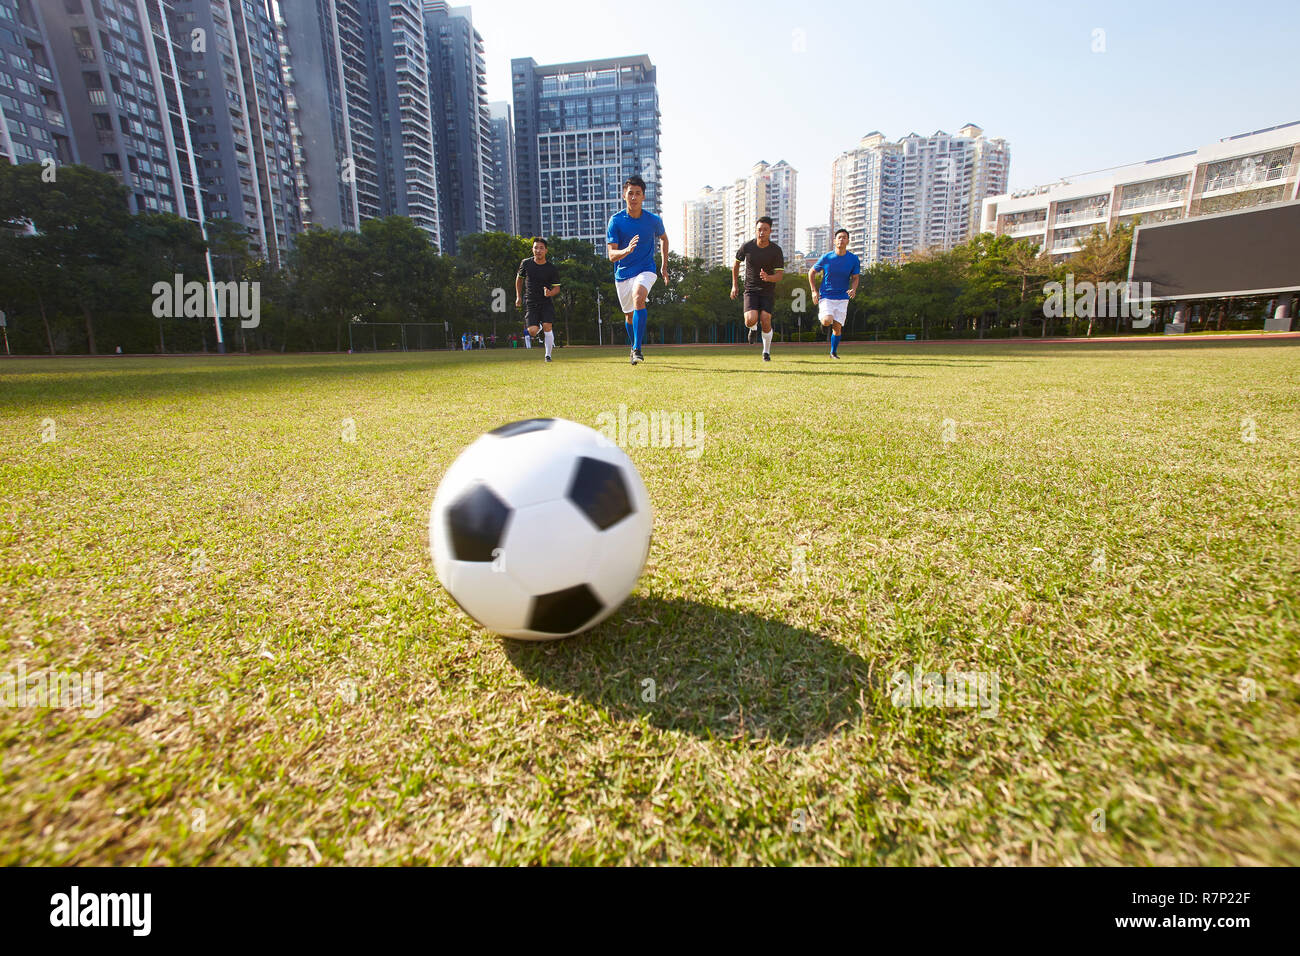 Jungen asiatischen Fußball-Fußball-Spieler jagen den Ball während eines Spiels Stockfoto